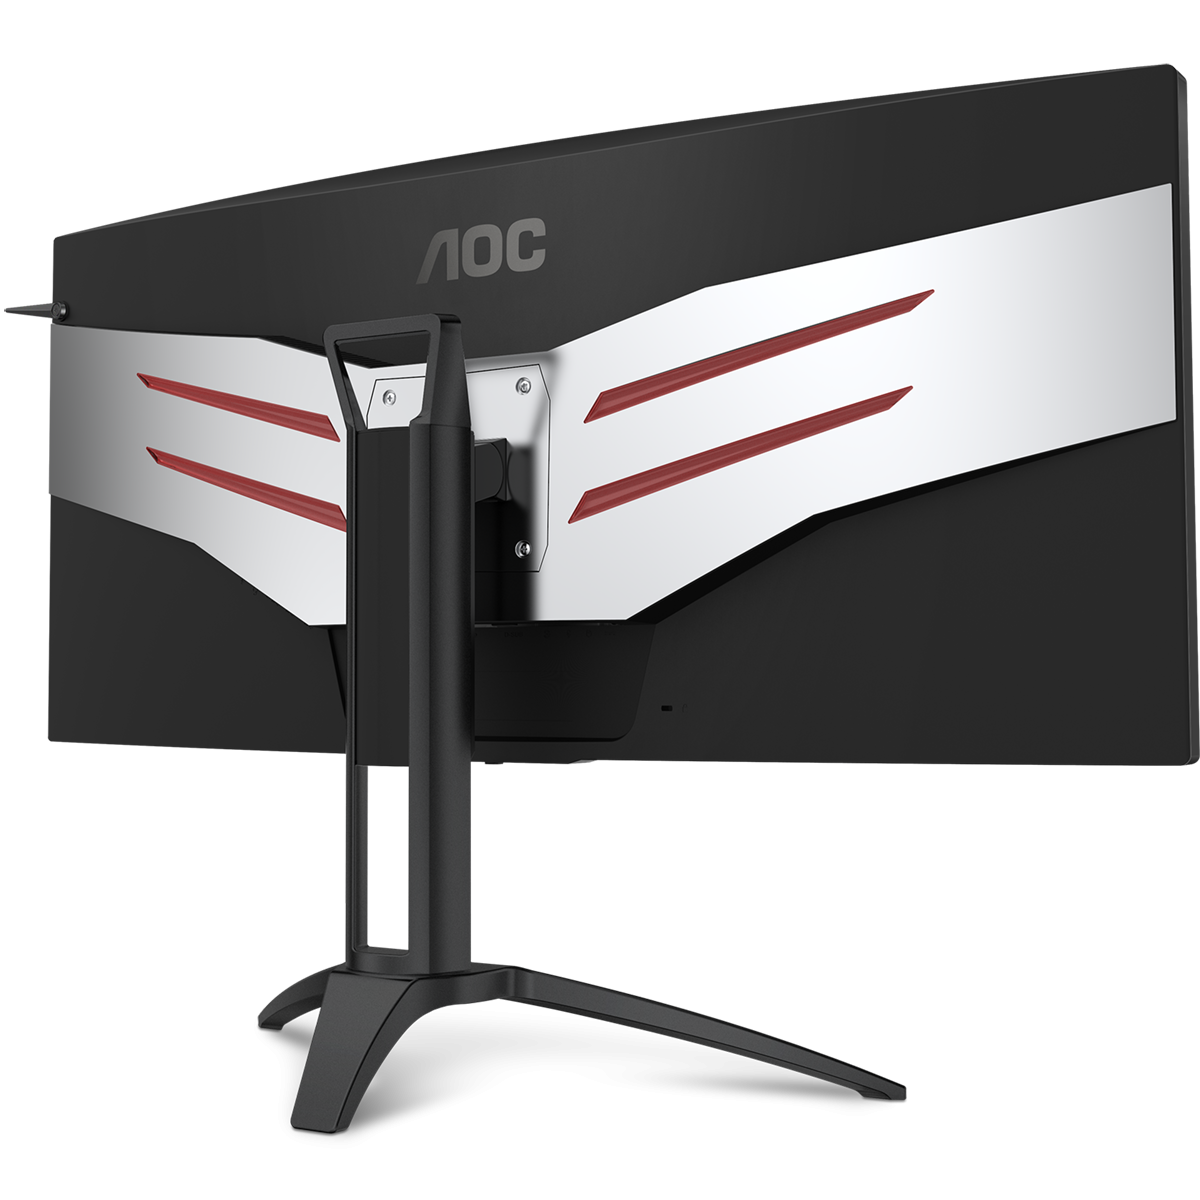 Игровой монитор AOC AGON AG352UCG6 в официальном интернет магазине AGONBYAOC.ru (AOC Россия)